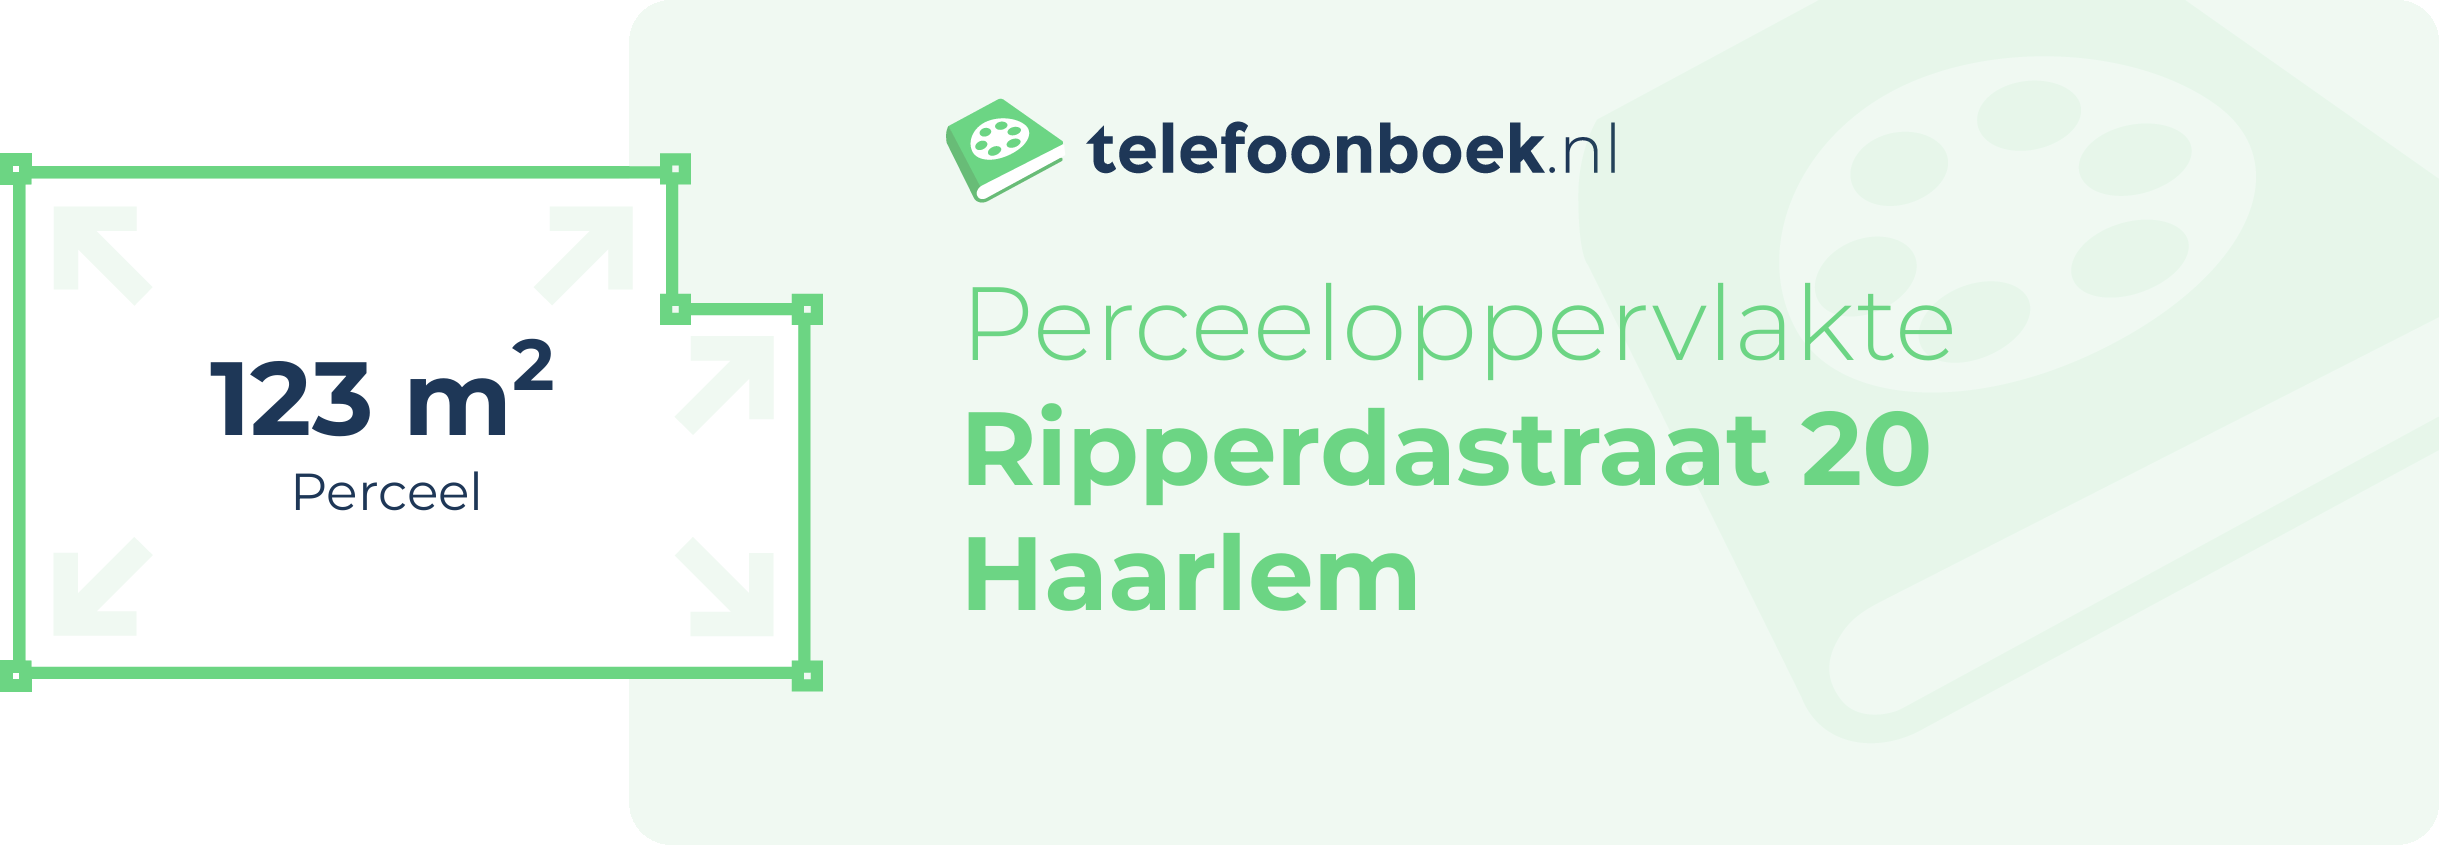 Perceeloppervlakte Ripperdastraat 20 Haarlem